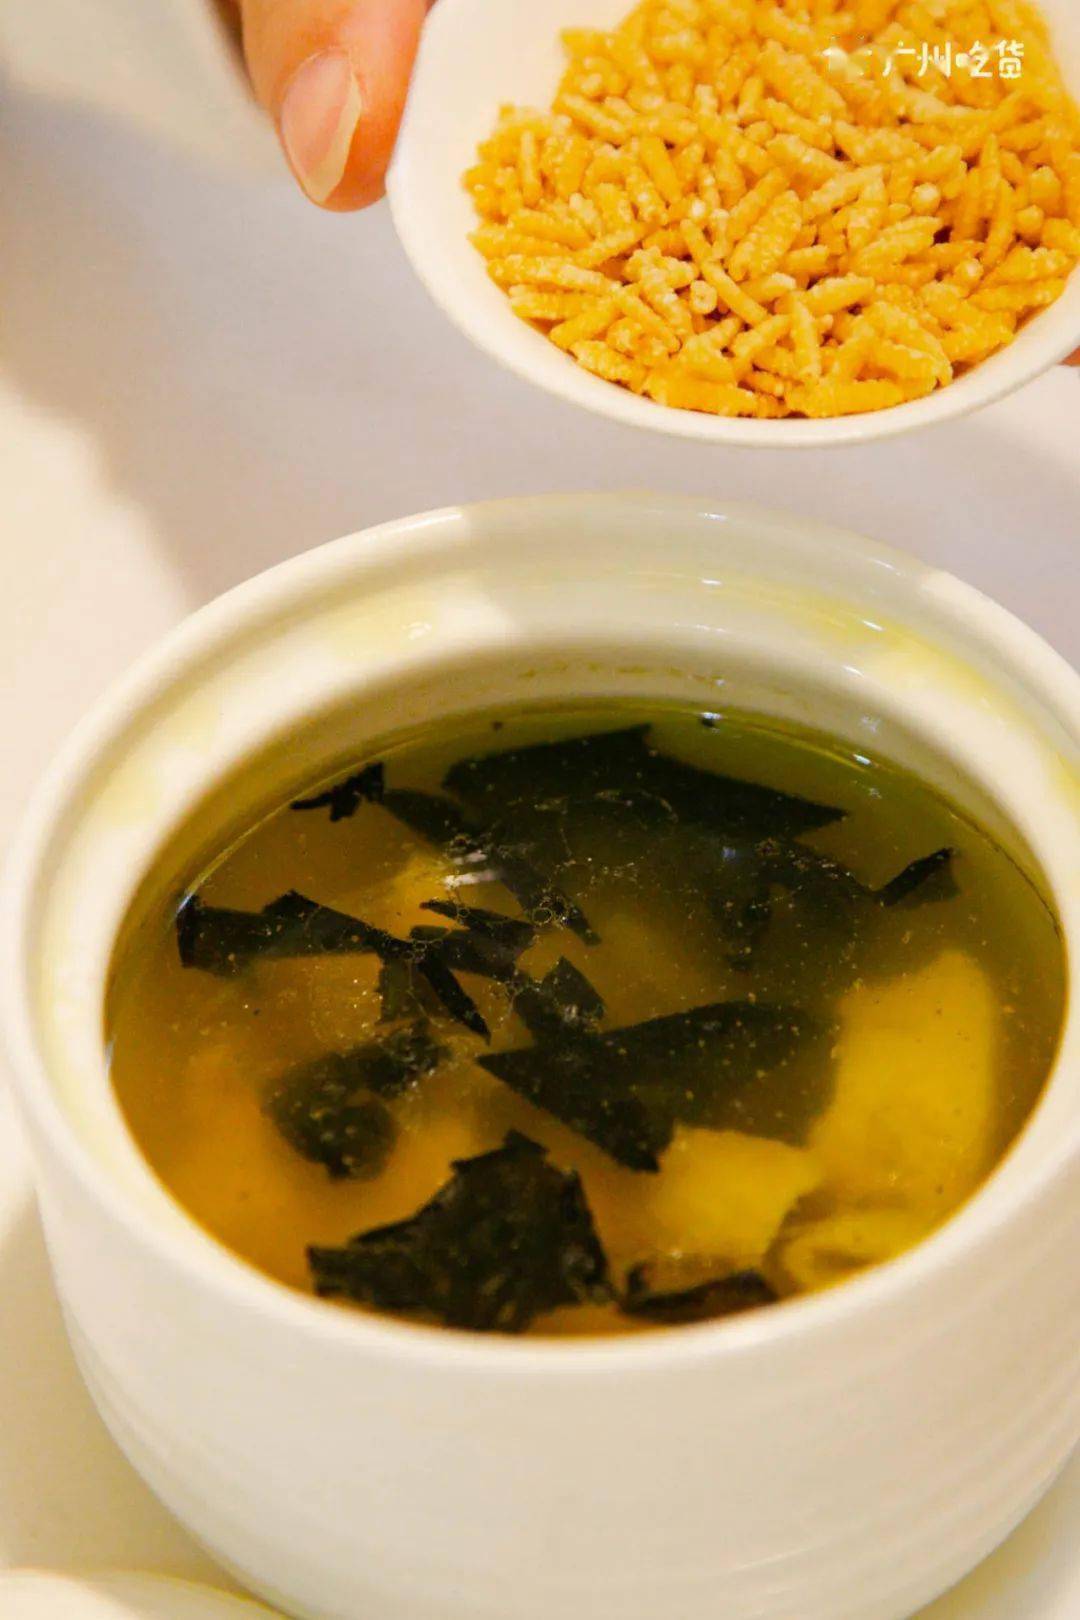 石耳炖土鸡汤是徽菜中的传统名菜,鸡肉 炖至 软烂,熬出来鸡汤非常鲜美